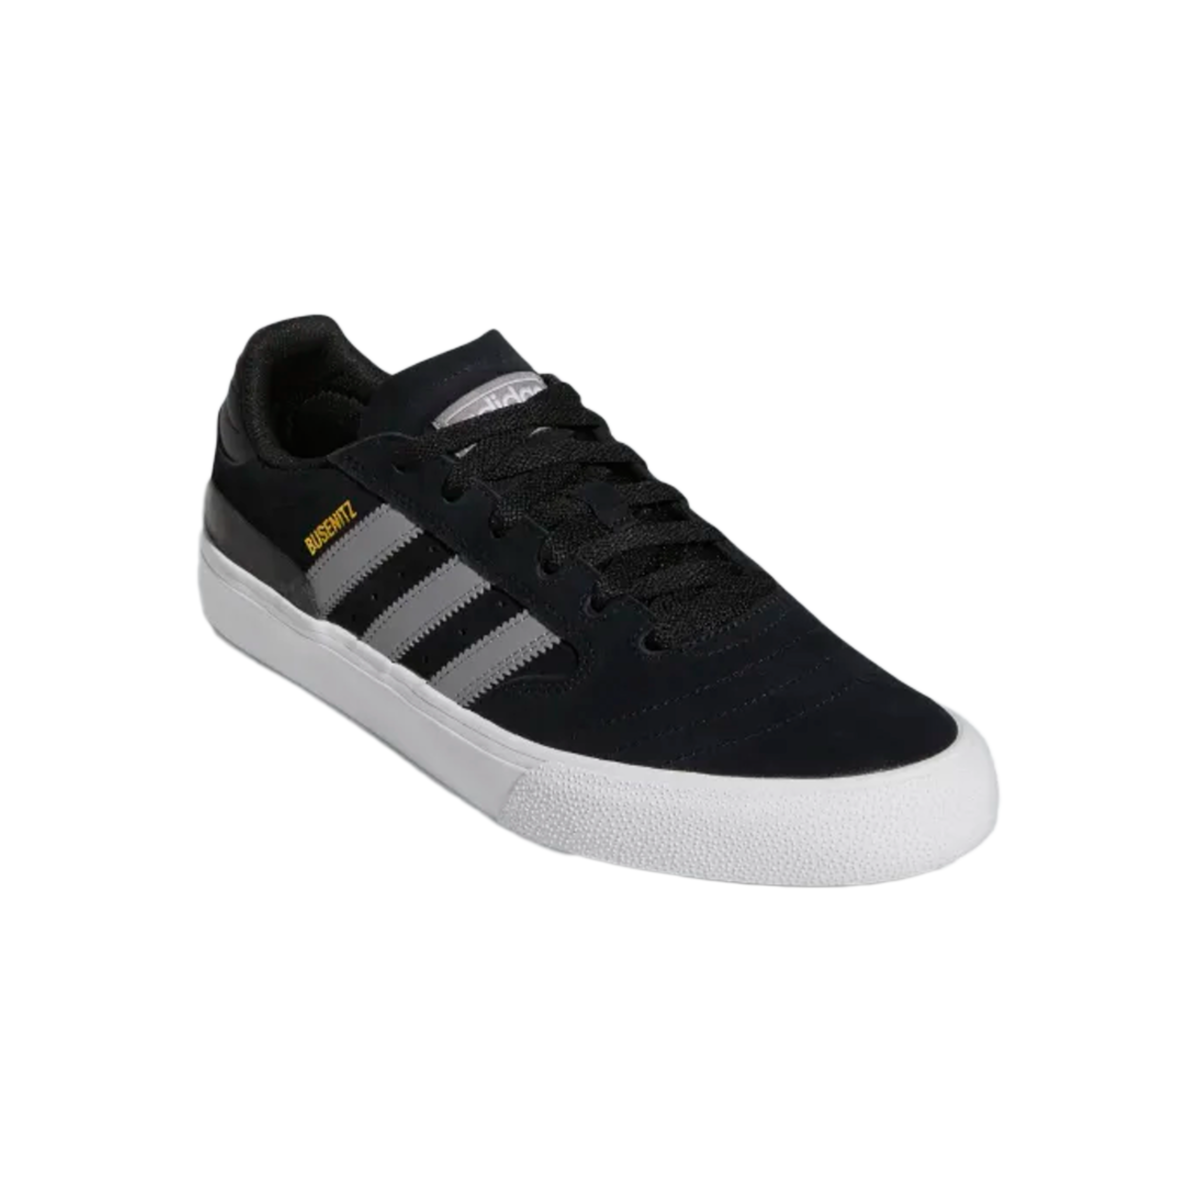 Adidas Busenitz Vulc 2 Shoes - Black/Grey